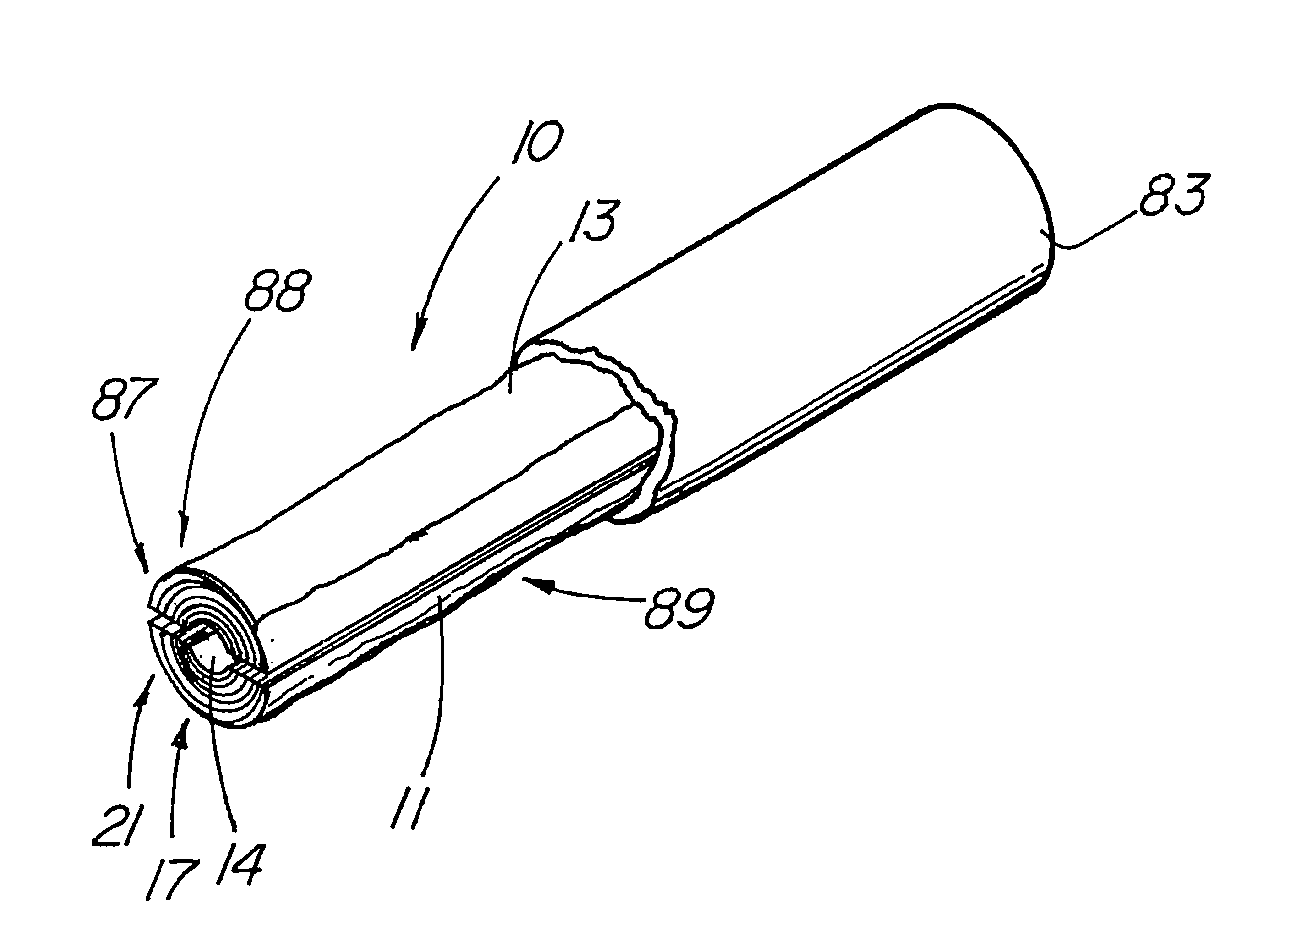 Bodily lumen closure apparatus and method